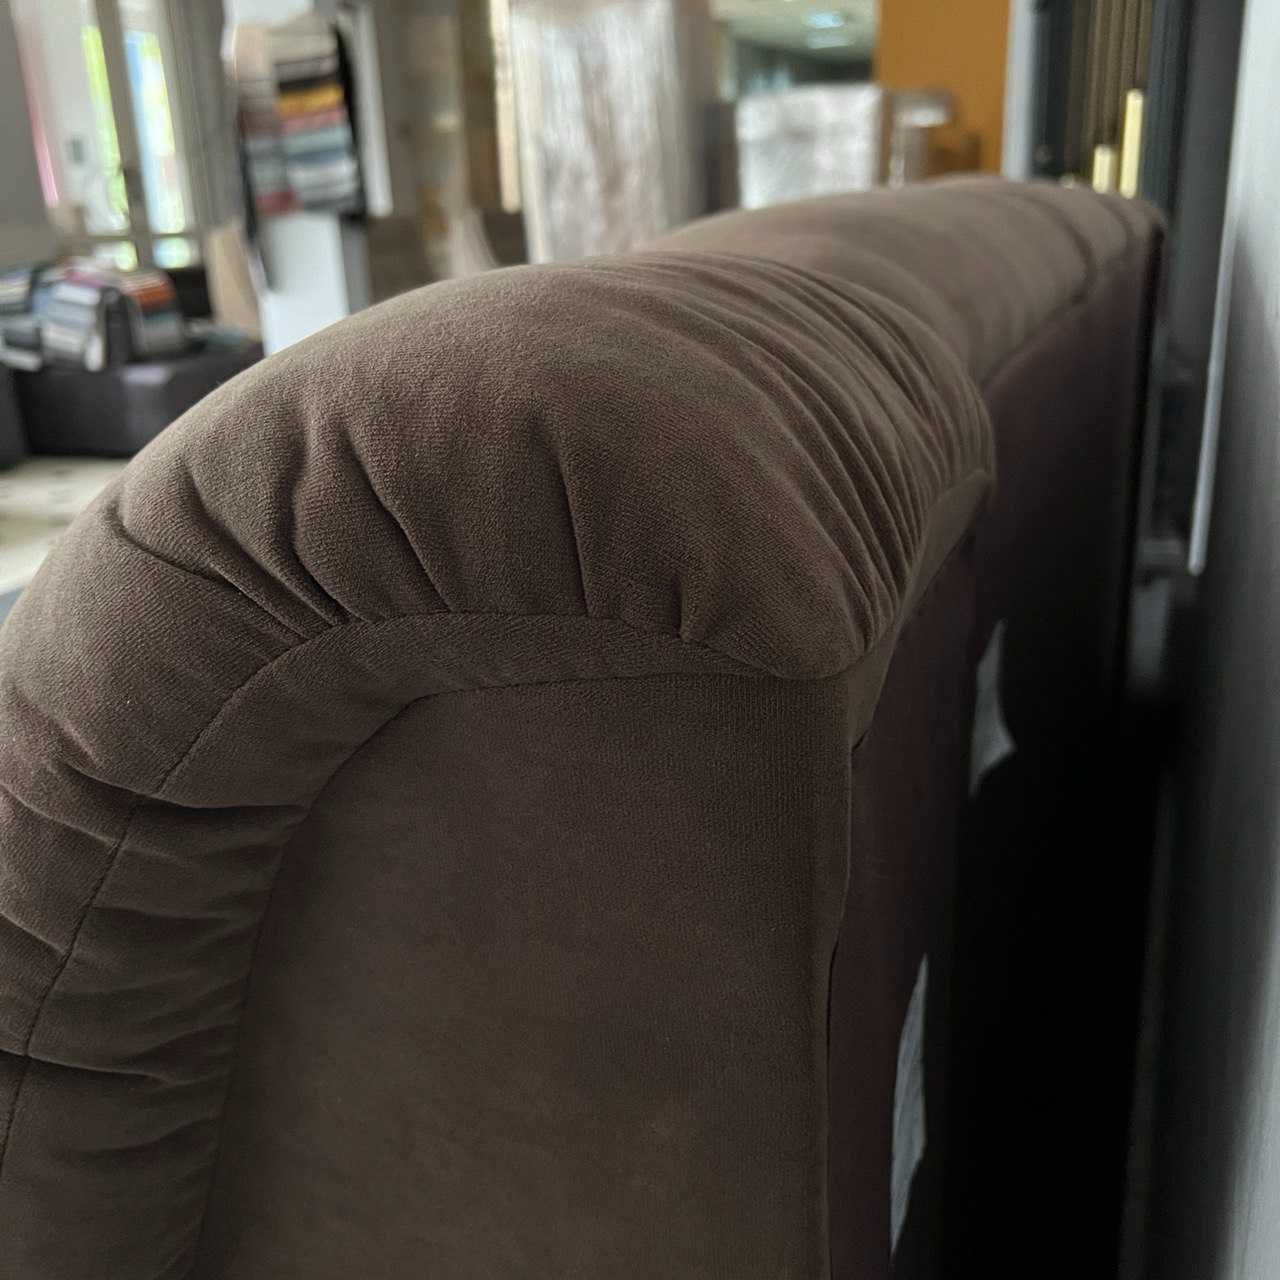 Новий прямий розкладний диван